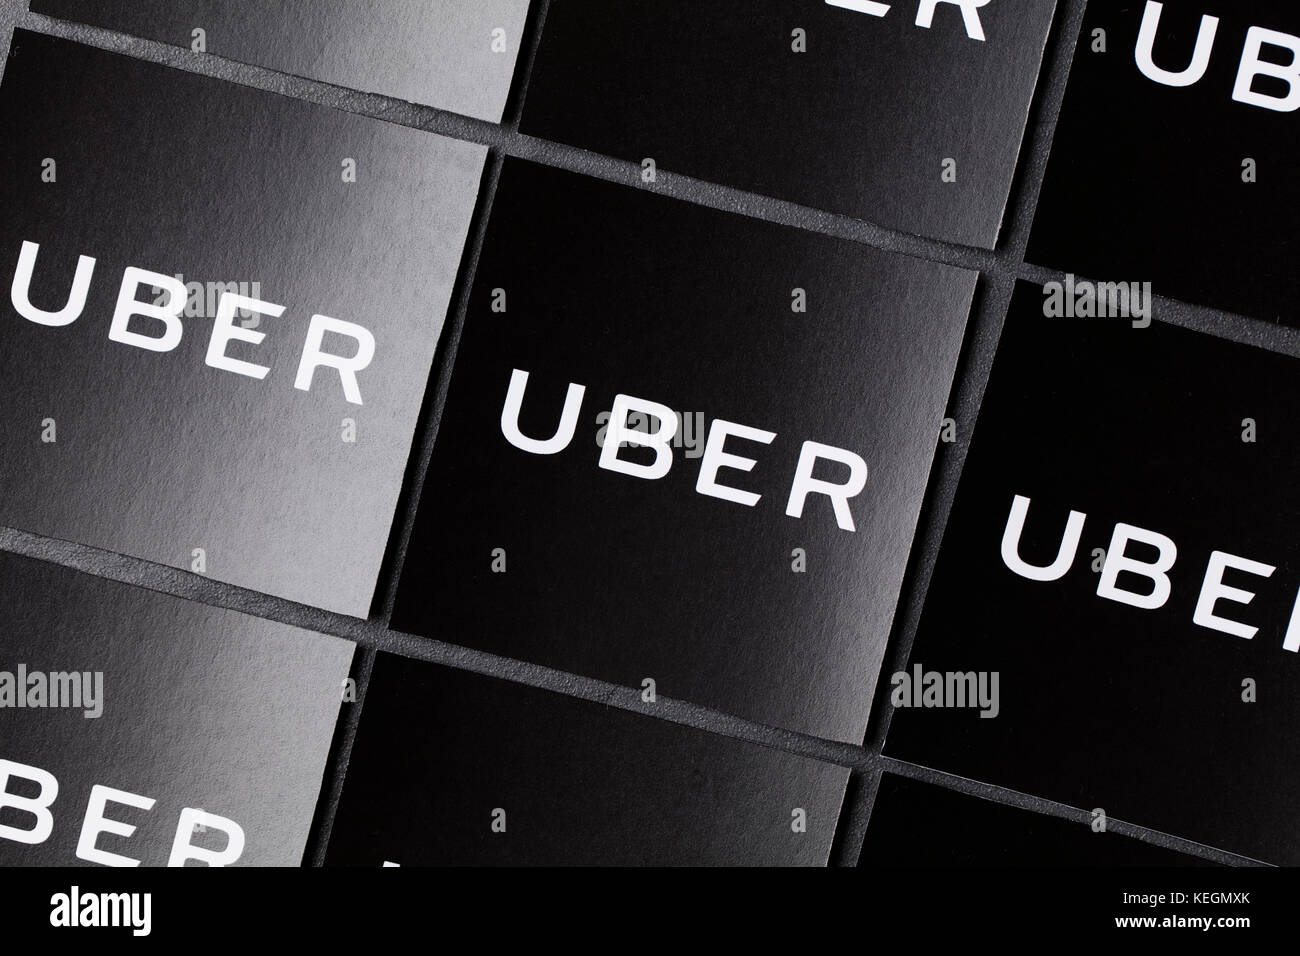 Una fotografia del logo uber. uber è un popolare stile taxi servizio trasporto applicazione, fondata nel 2009 Foto Stock